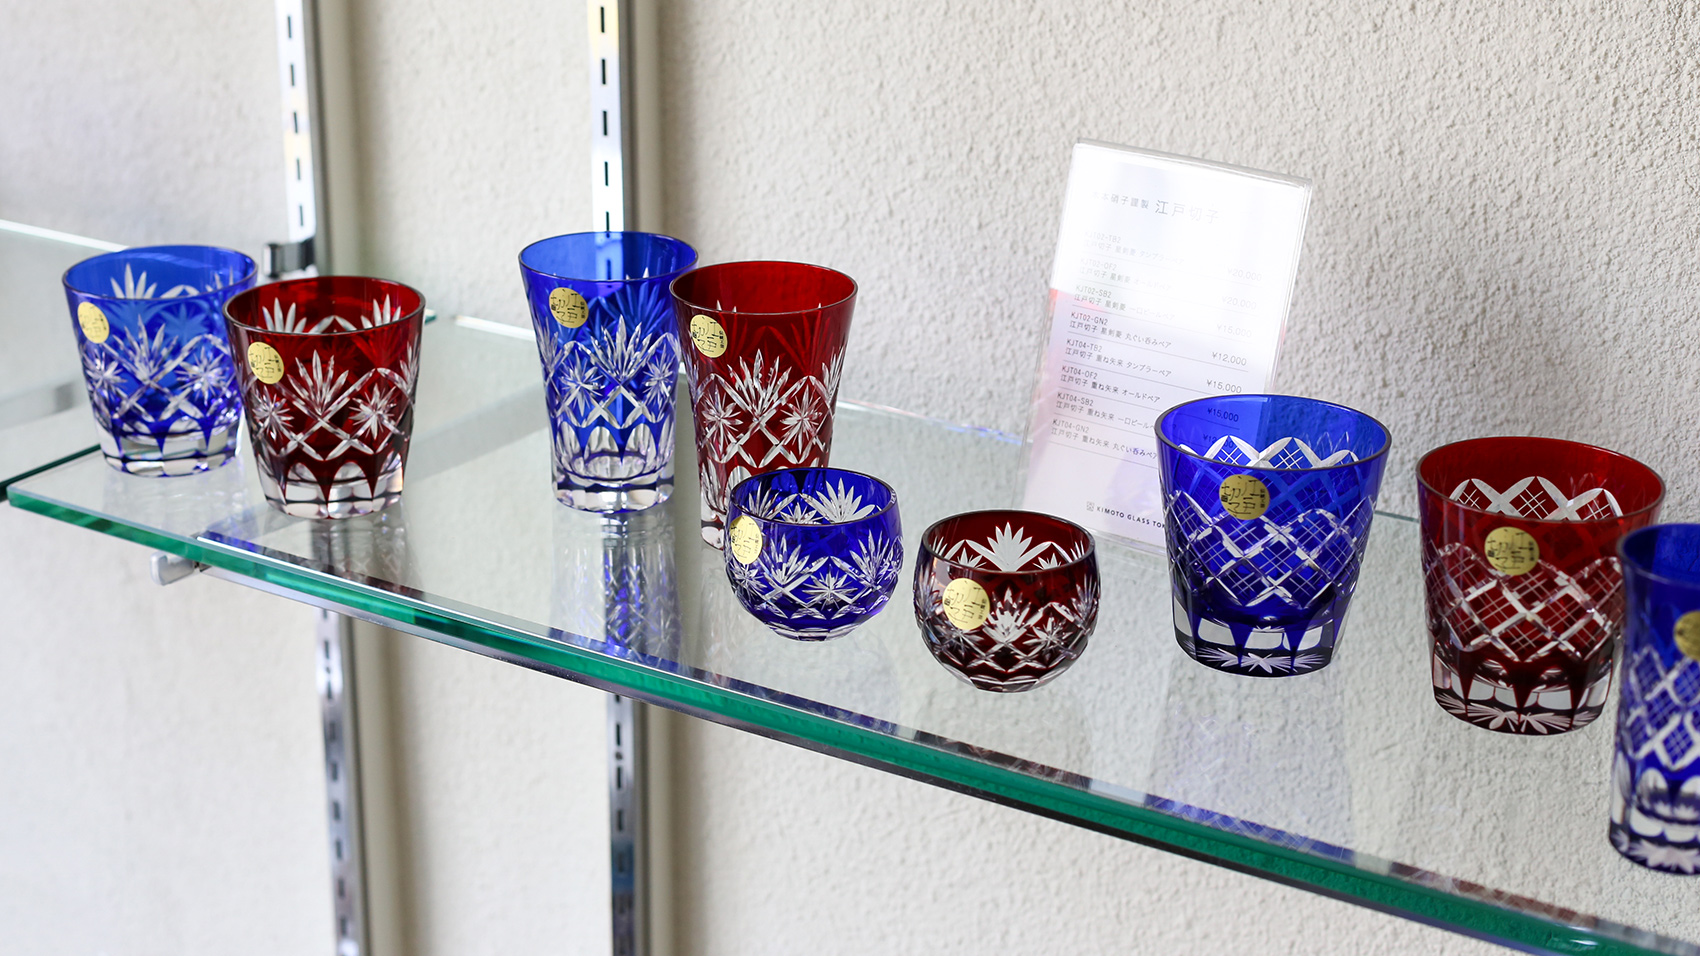 硝子のすべてをプロデュースする「木本硝子」の江戸切子グラス「KUROCO